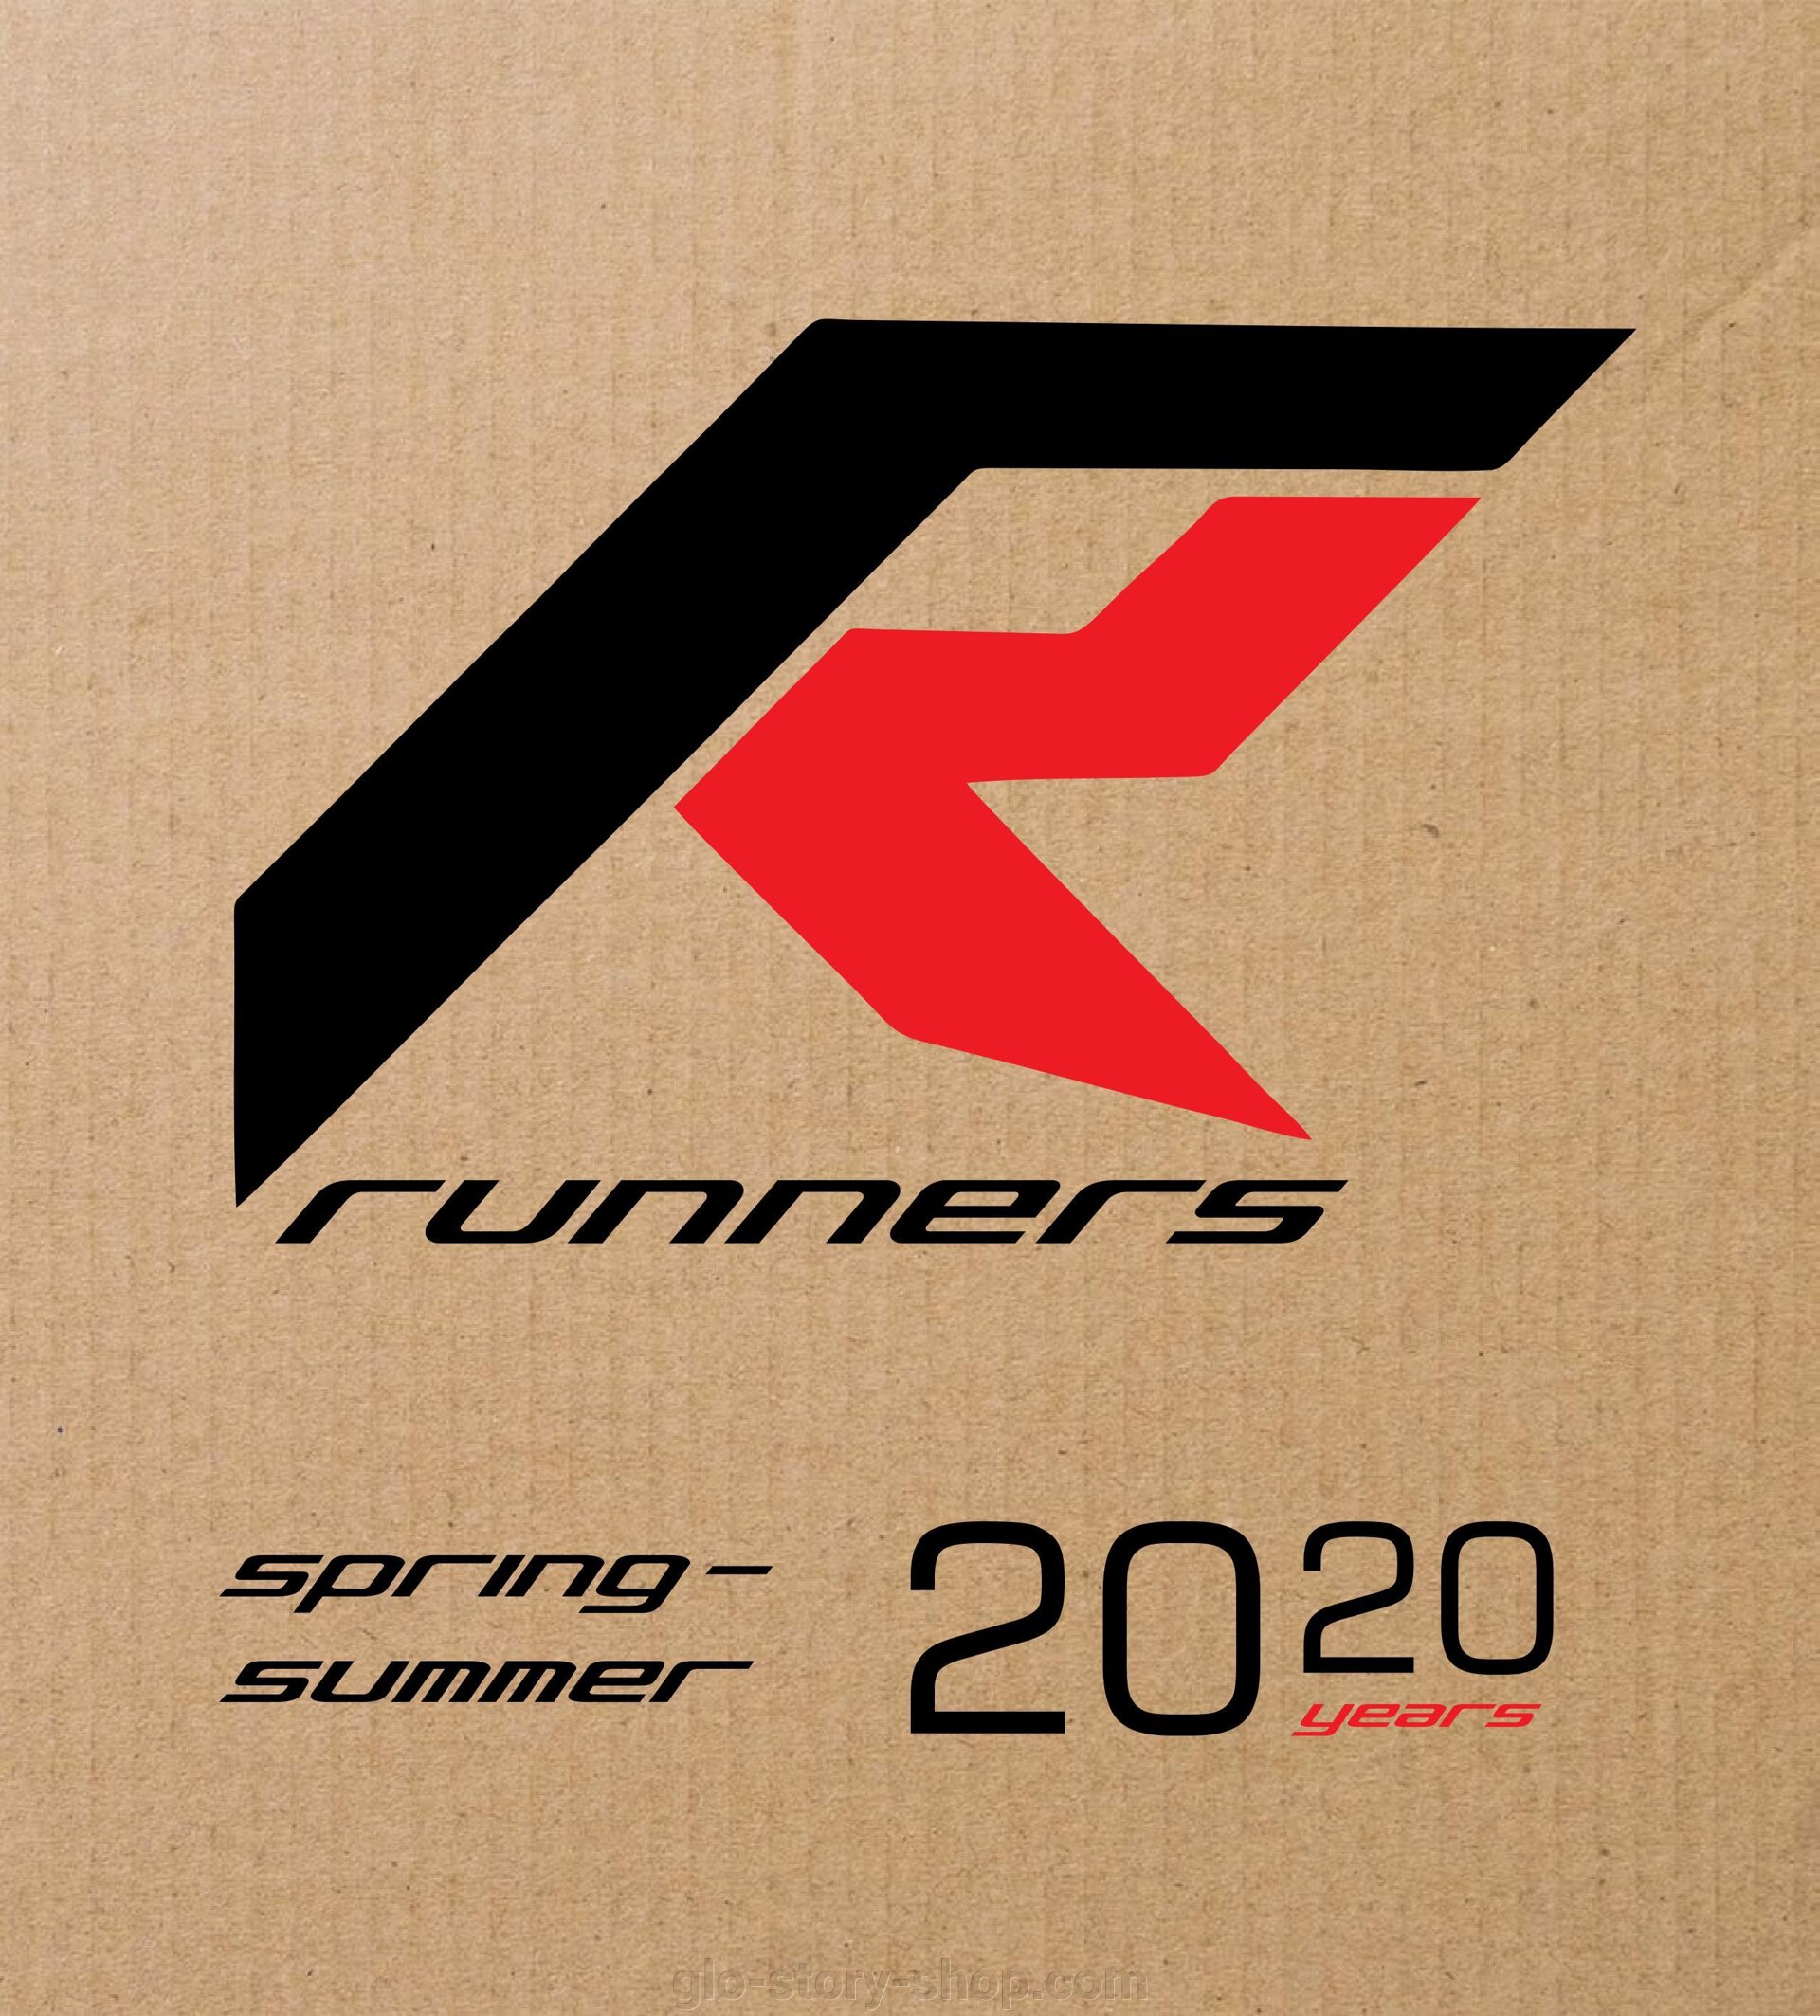 Каталог Runners весна- лето 2020 - фото pic_4f7f930bf9470d96f08690ce4eacfe8d_1920x9000_1.jpg